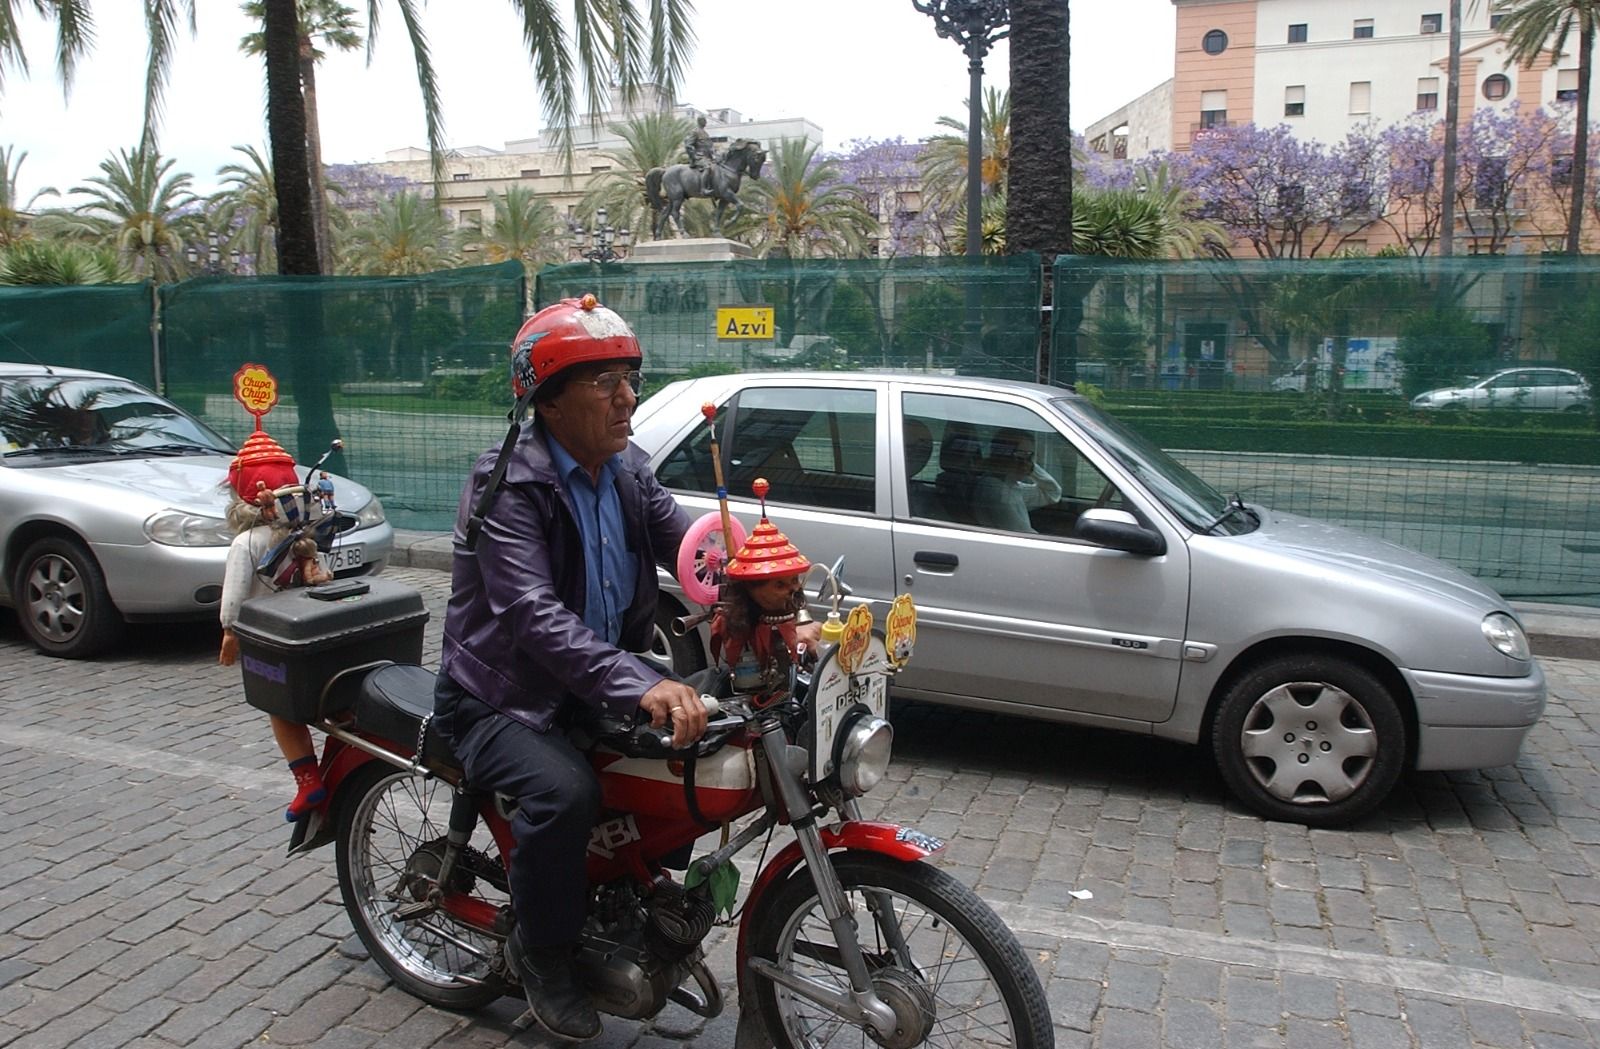 Vehículos aún transitando por la plaza, algunos tan curiosos como la moto de la imagen..     JUAN CARLOS TORO